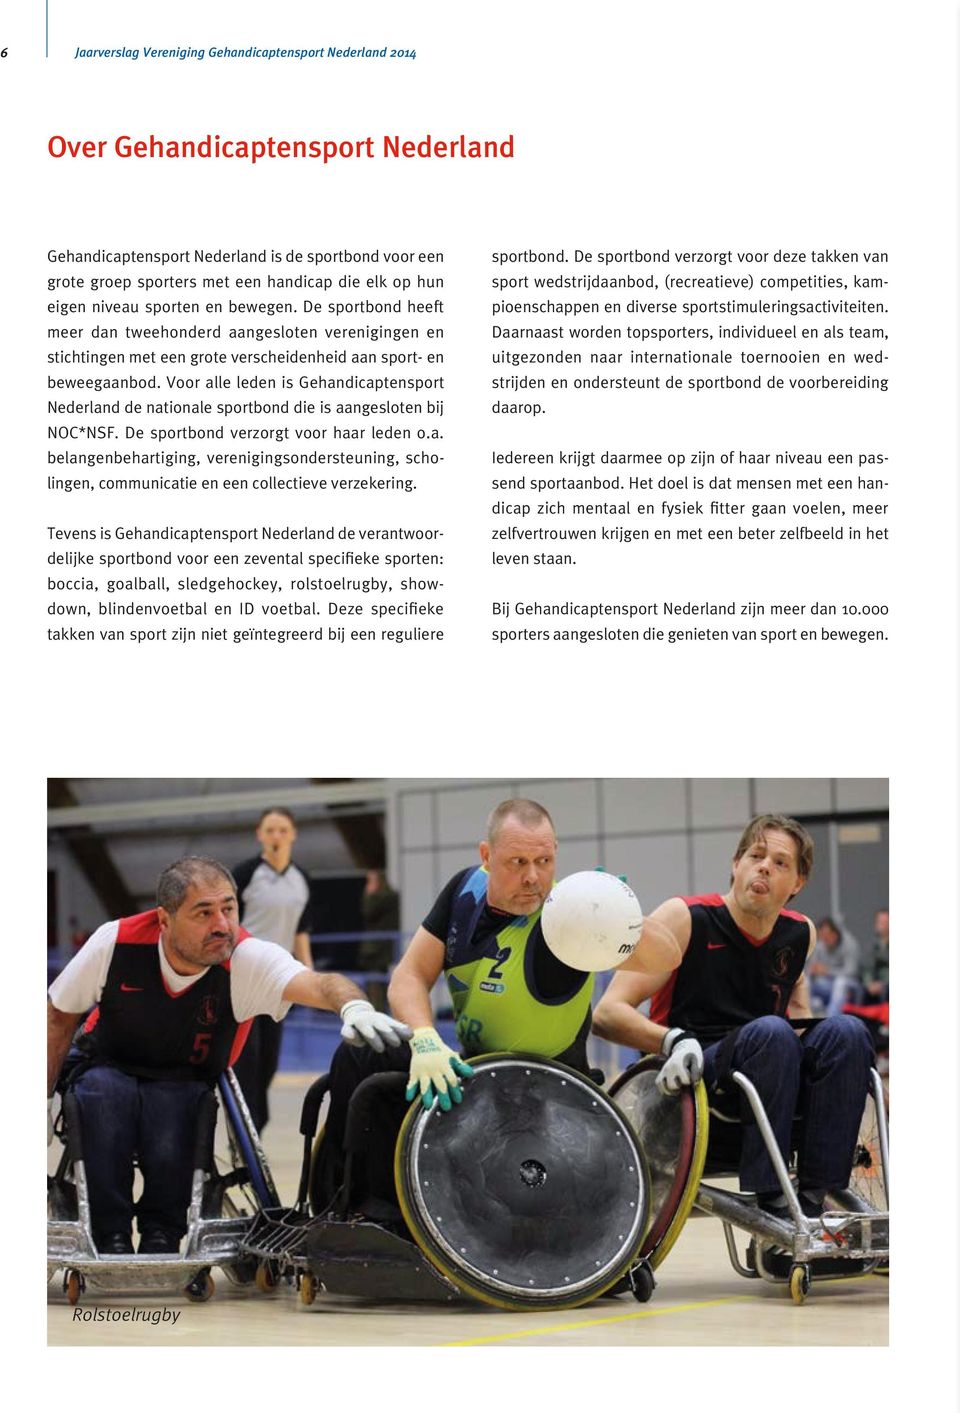 Voor alle leden is Gehandicaptensport Nederland de nationale sportbond die is aangesloten bij NOC*NSF. De sportbond verzorgt voor haar leden o.a. belangenbehartiging, verenigingsondersteuning, scholingen, communicatie en een collectieve verzekering.